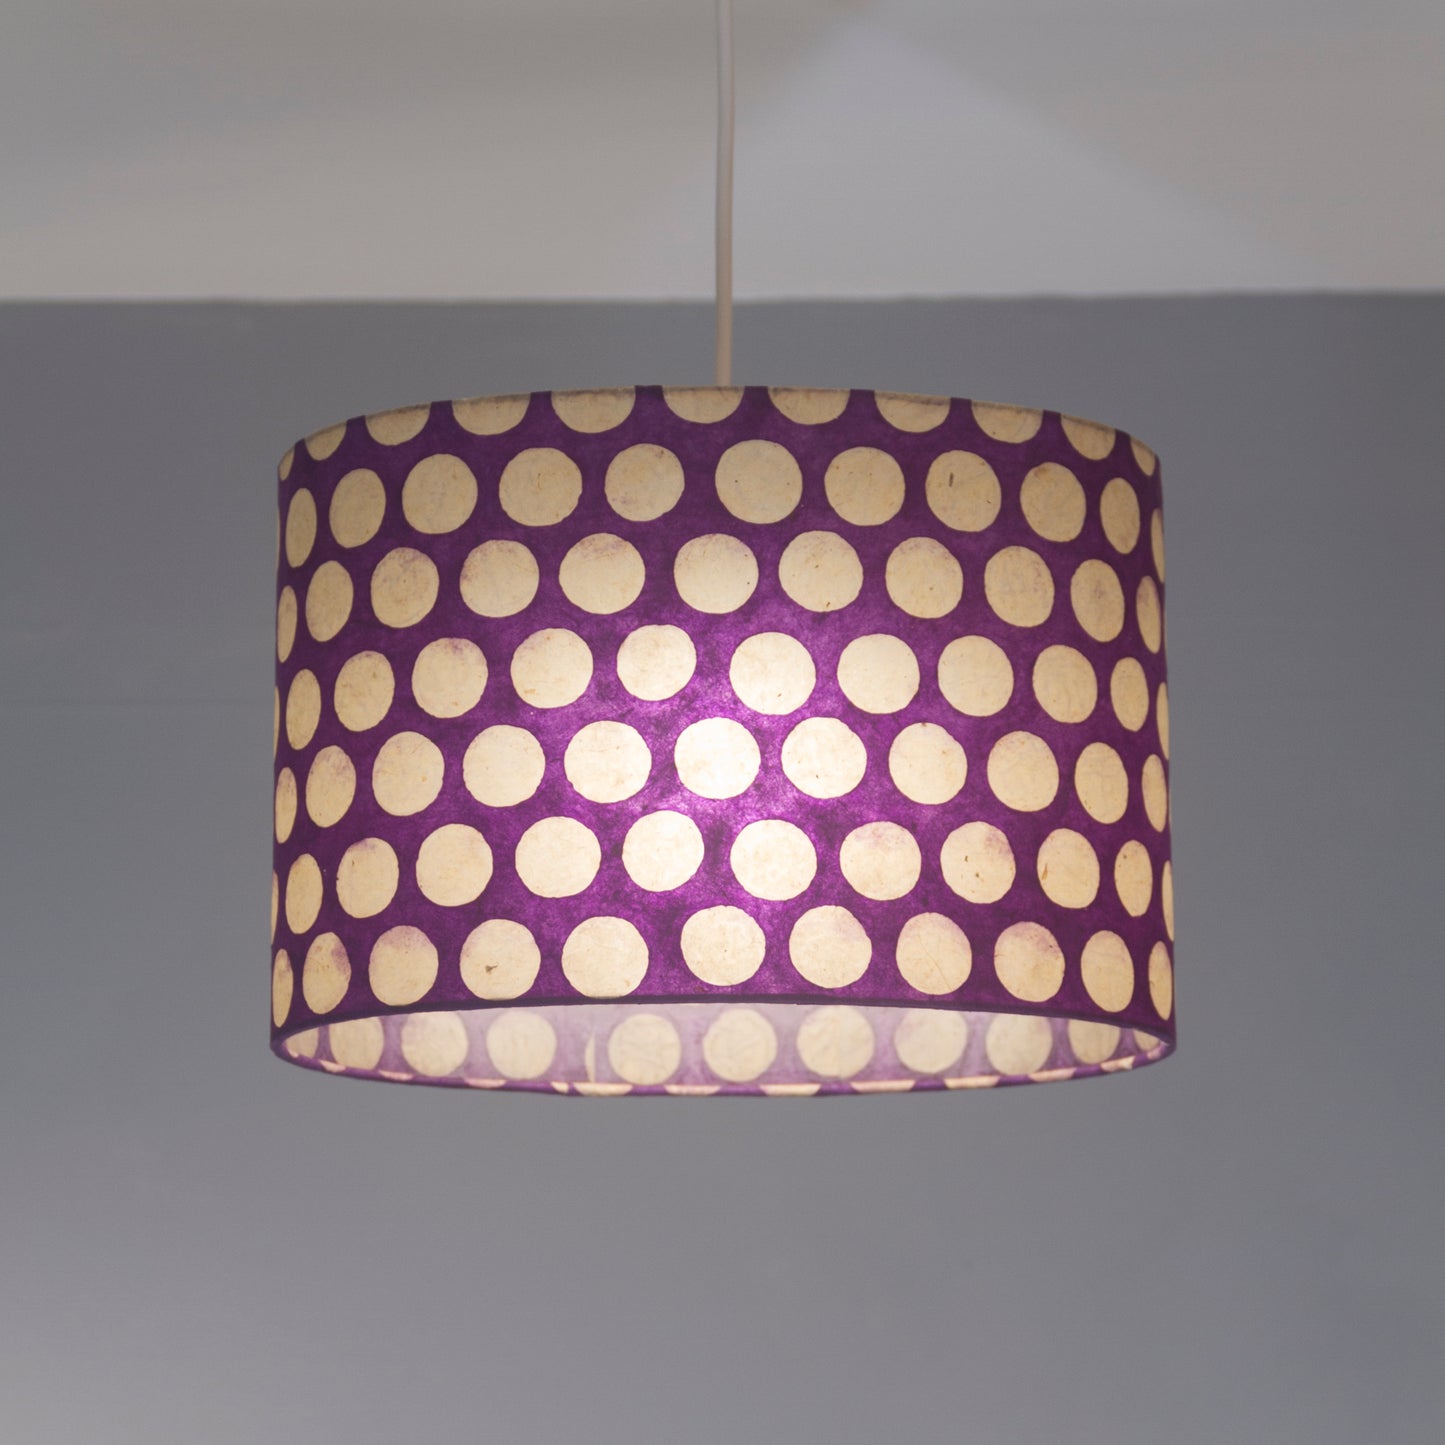 Square Lamp Shade - P79 - Batik Dots Purple, 20cm(w) x 30cm(h) x 20cm(d)